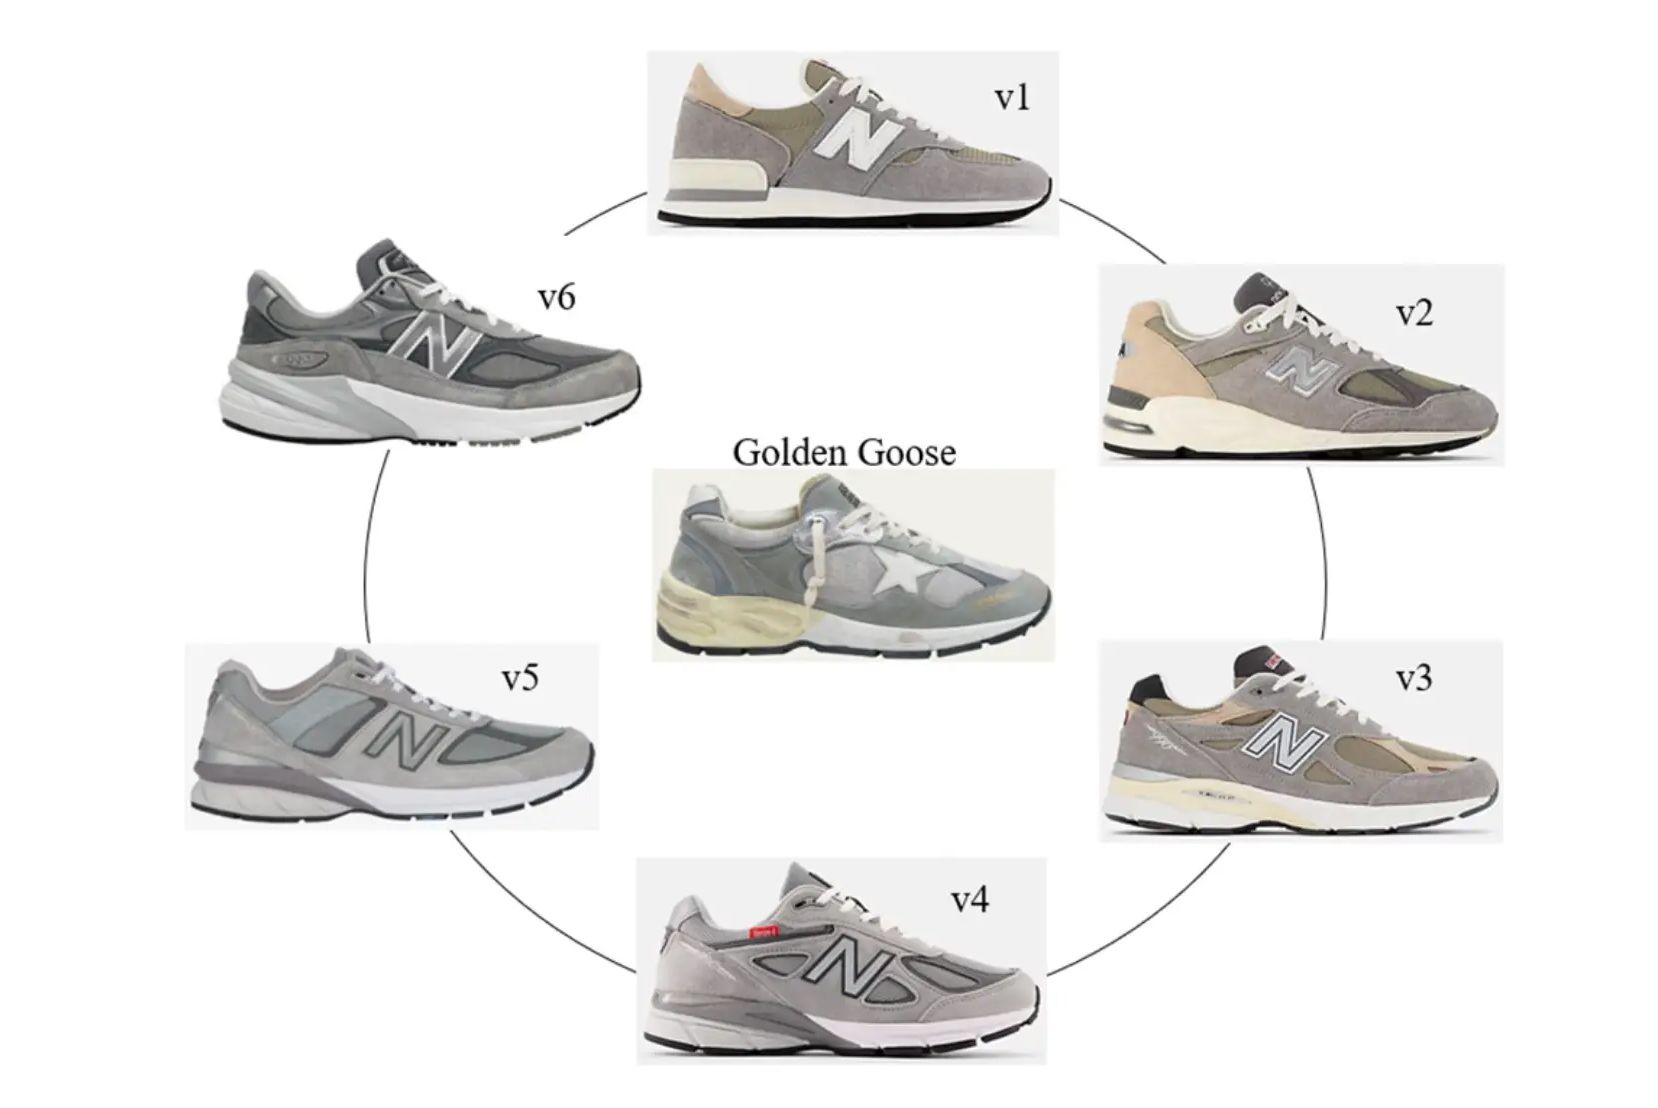 New Balance Sue Golden Goose and Request Profit Handover - Sneaker Freaker